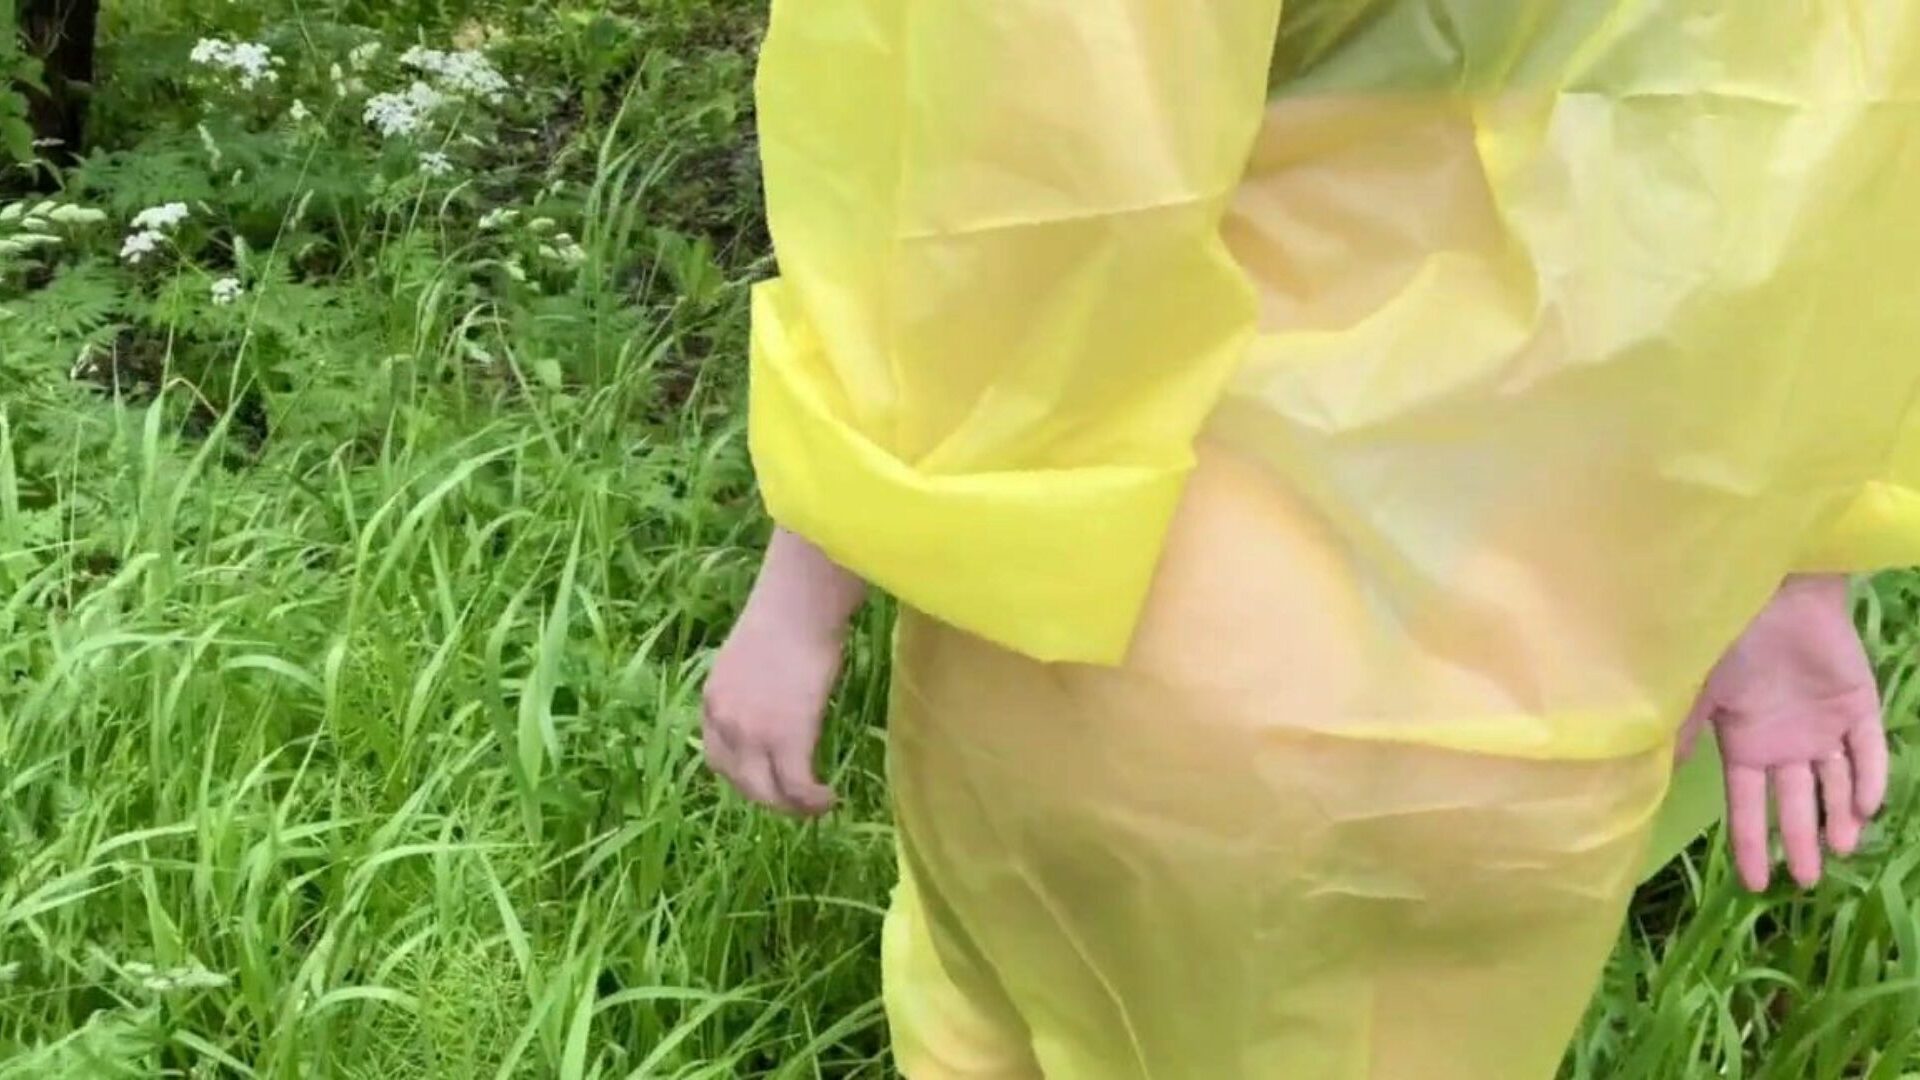 garota com capa de chuva sendo fodida na floresta depois da chuva